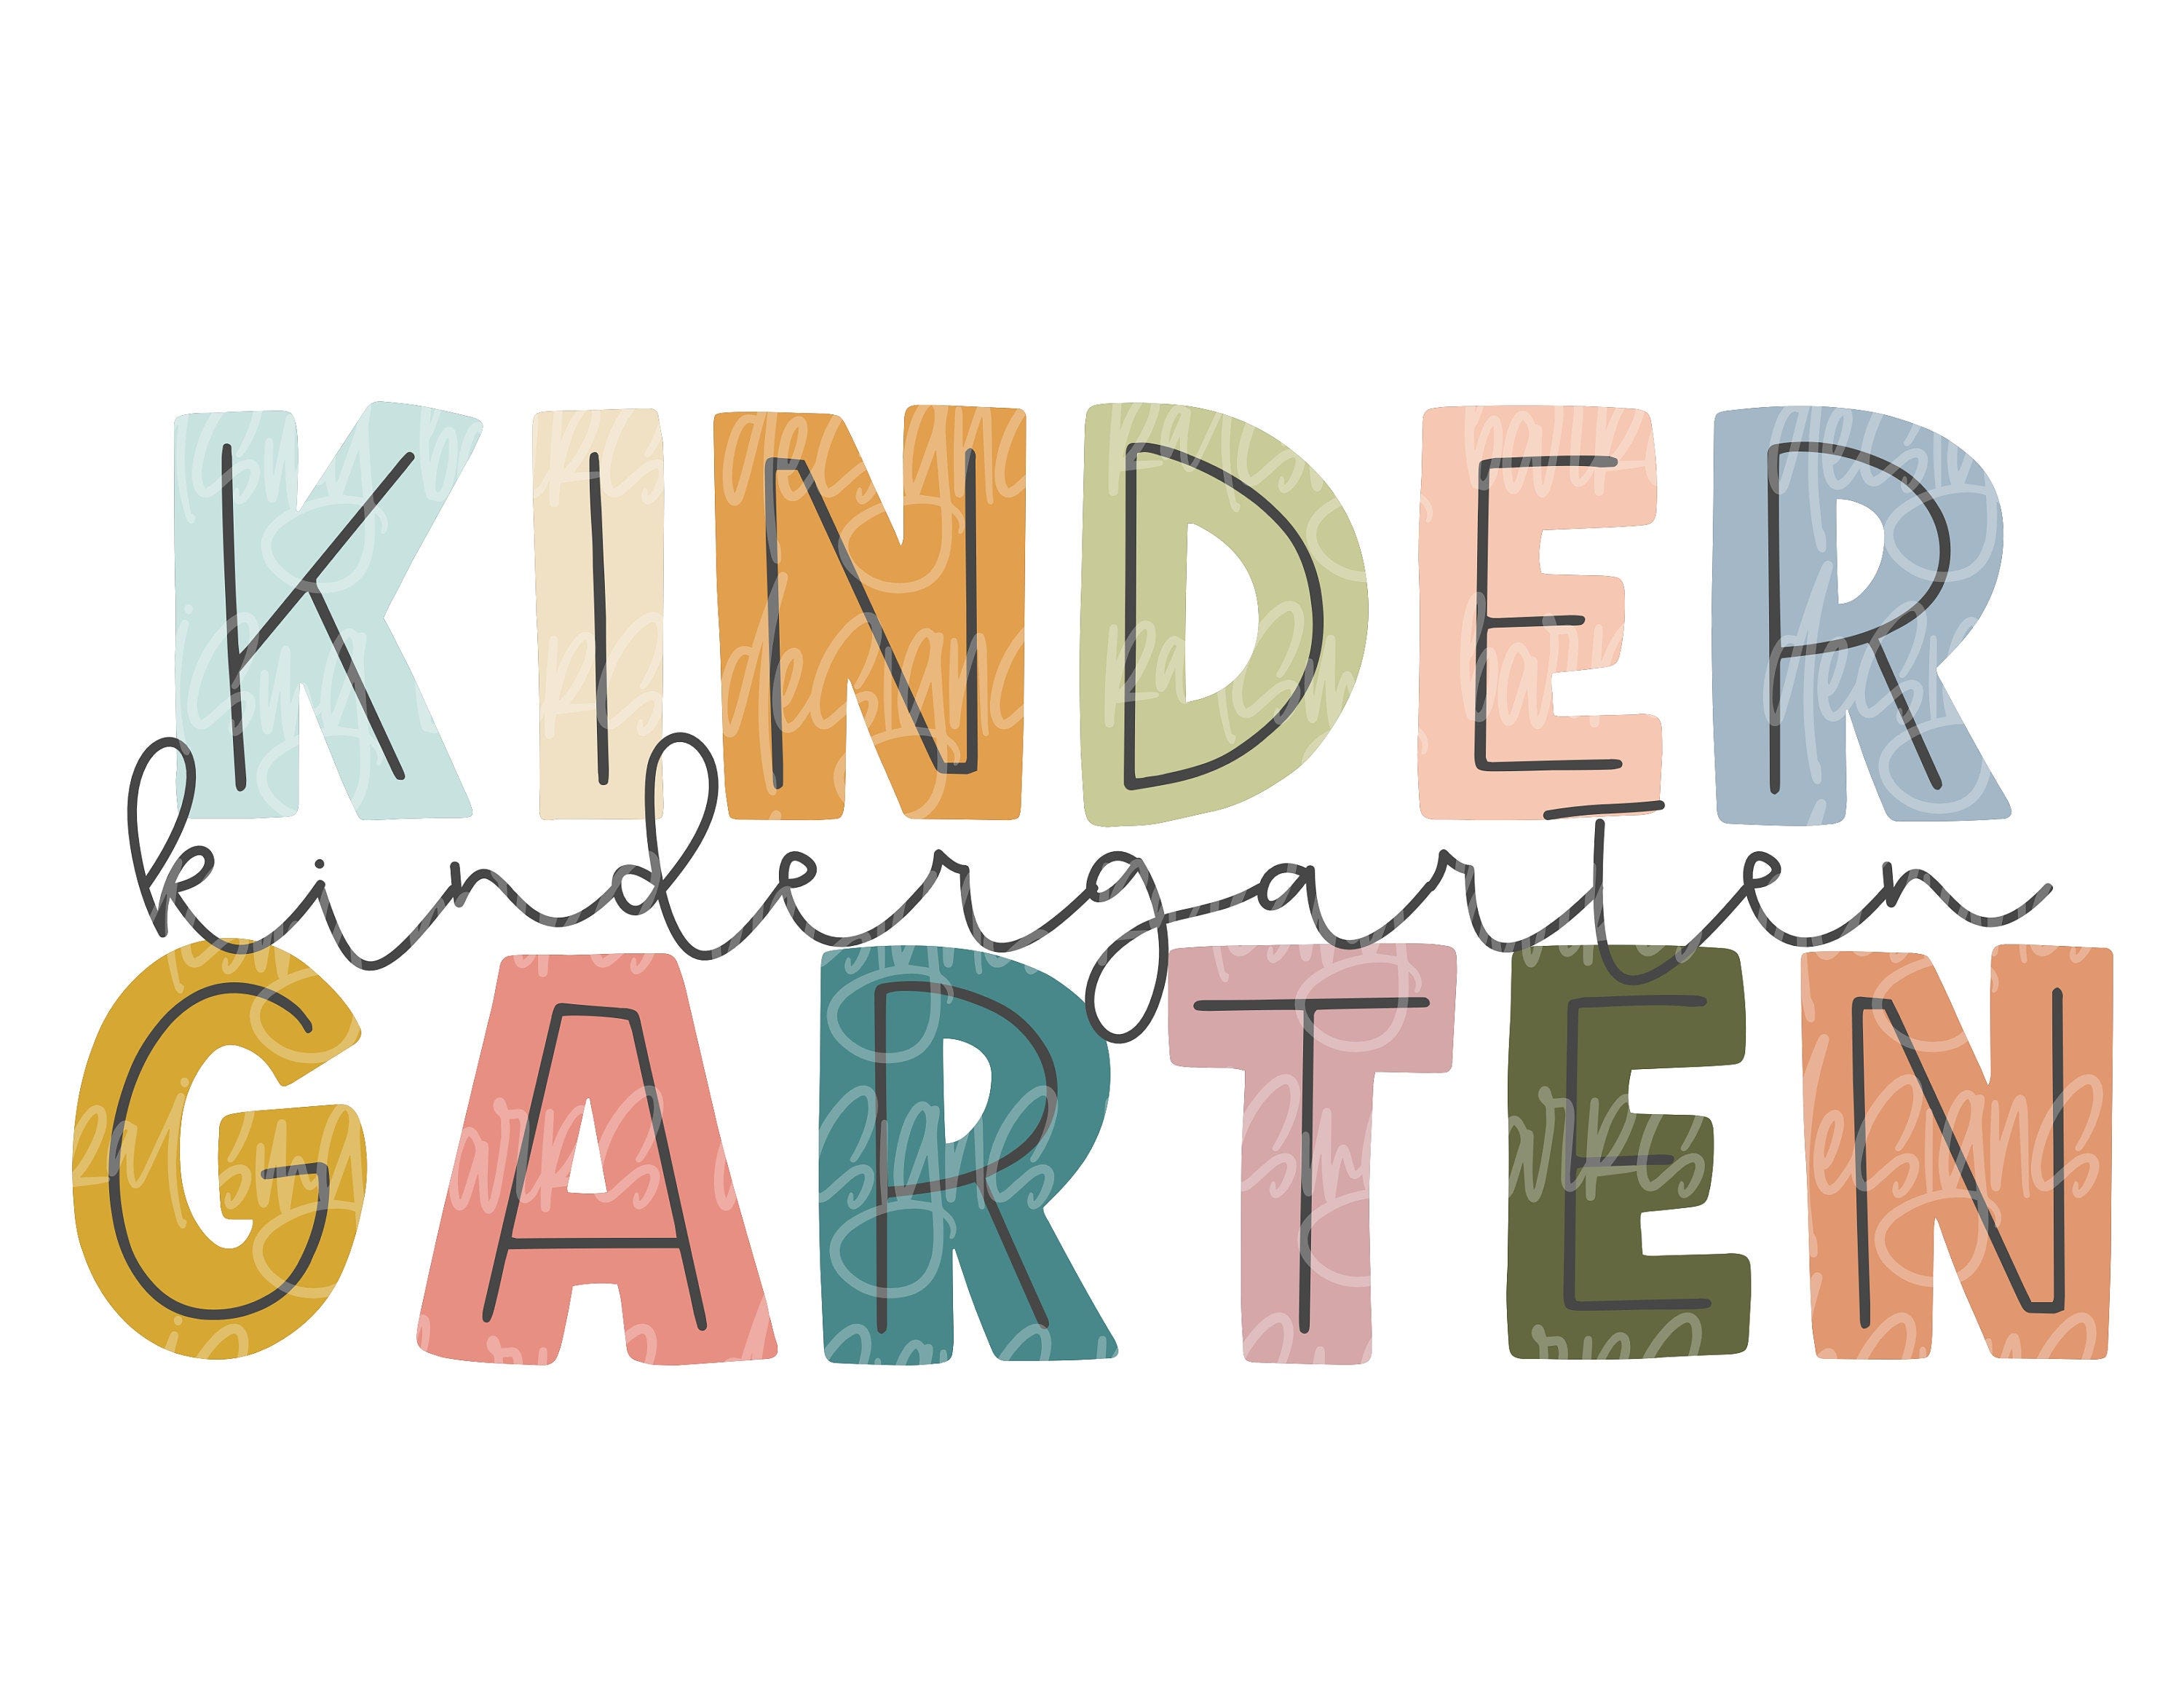 Kindergarten png| kindergarten teacher png, kindergarten sublimation design download